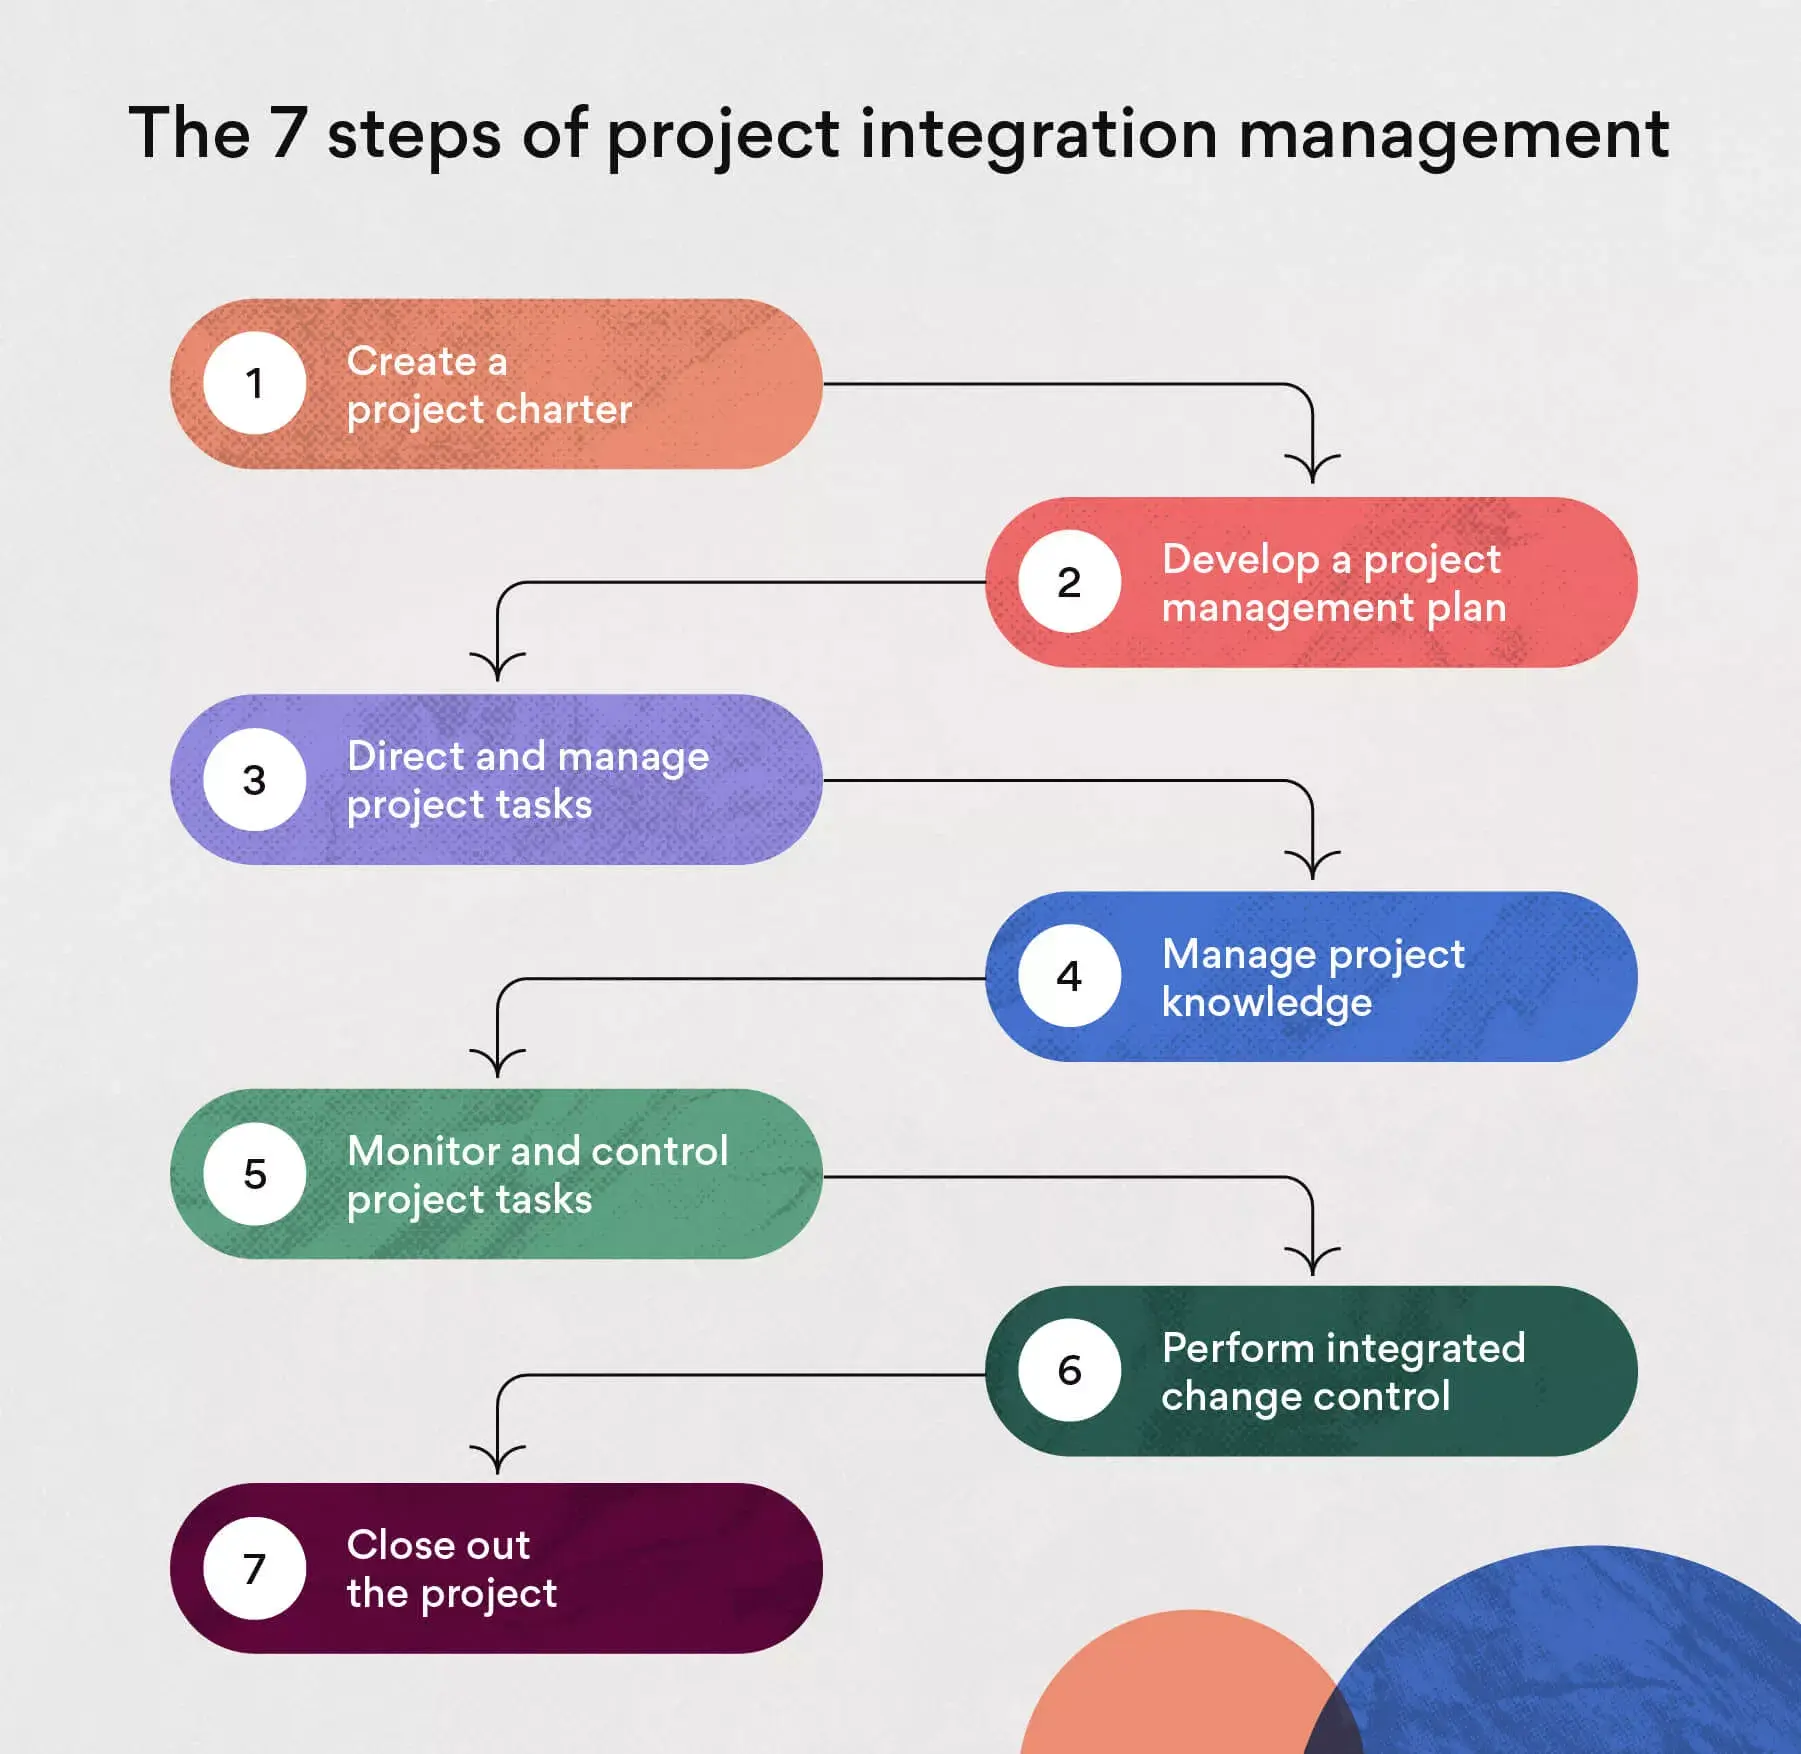 As sete etapas da gestão de integrações de projetos